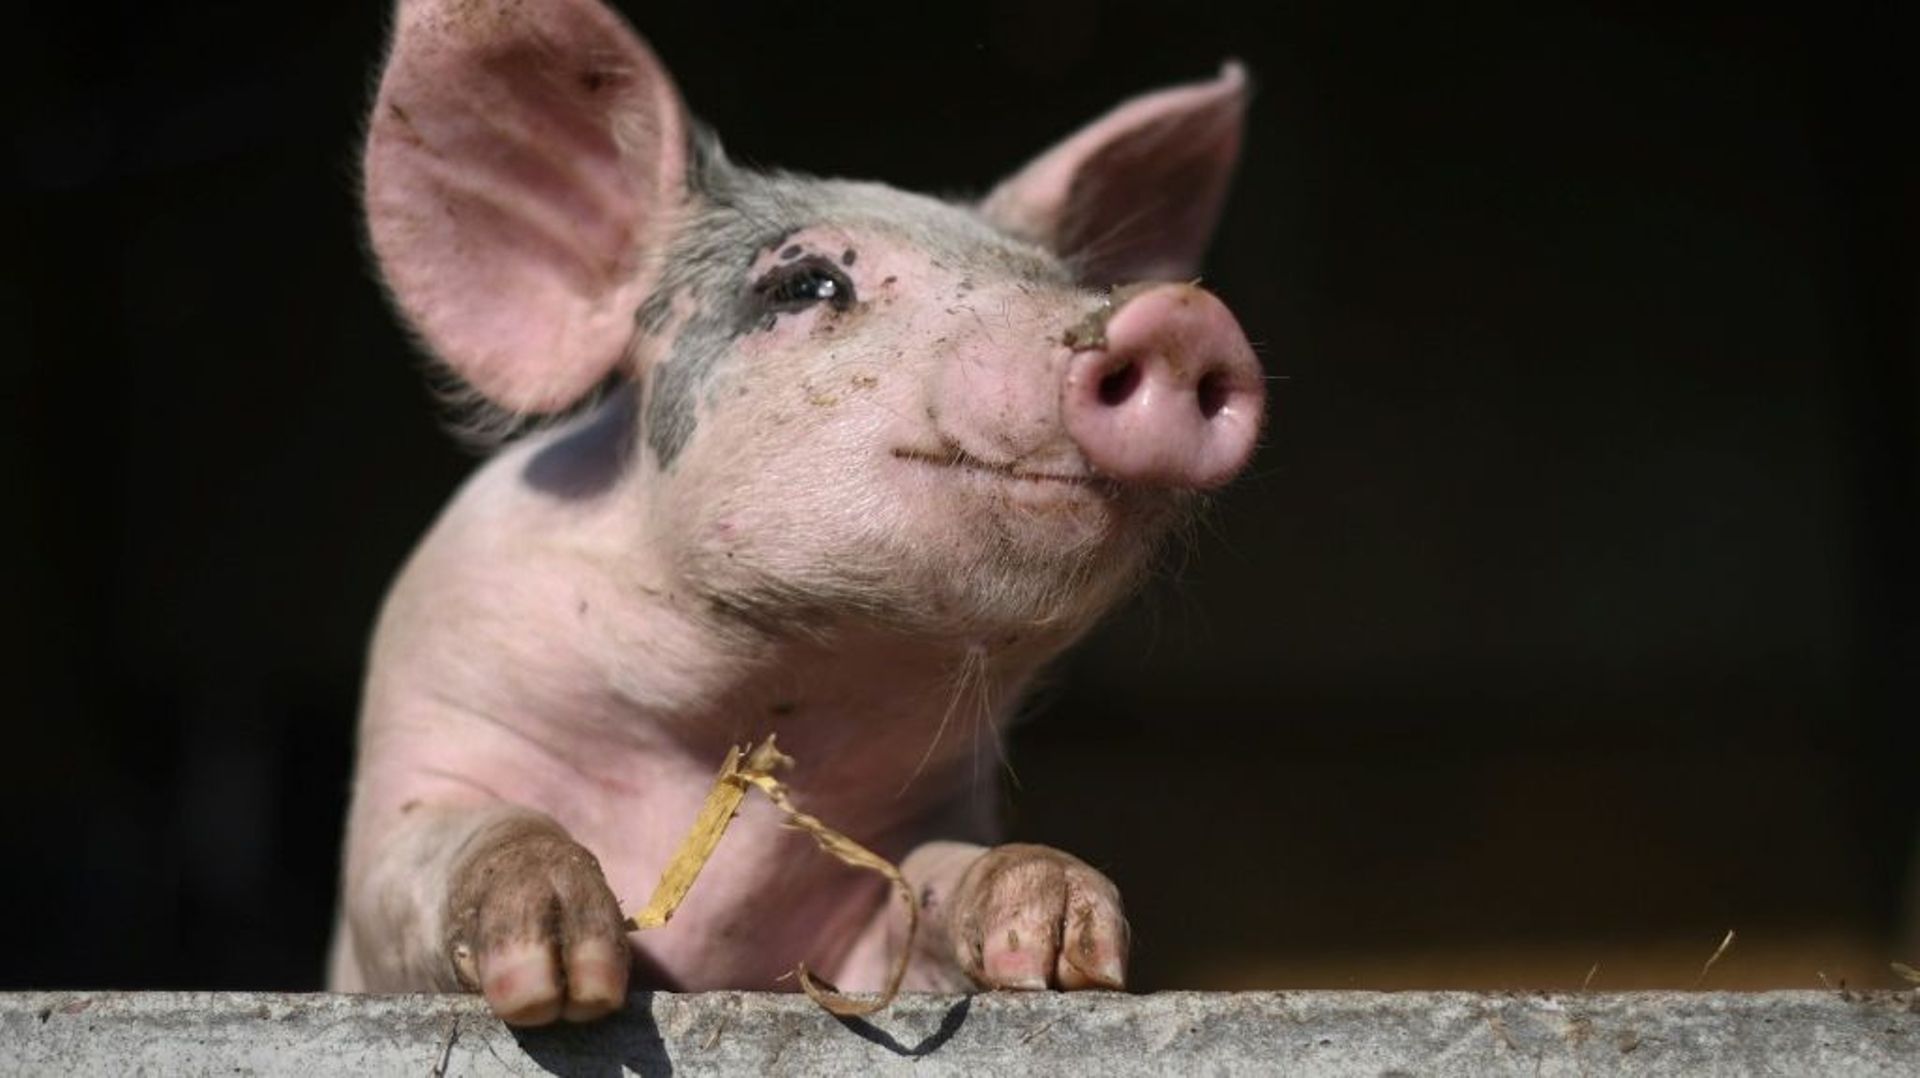 Des chercheurs européens ont mis au point un outil pour décoder les sentiments qu’expriment les cochons dans leurs divers grognements